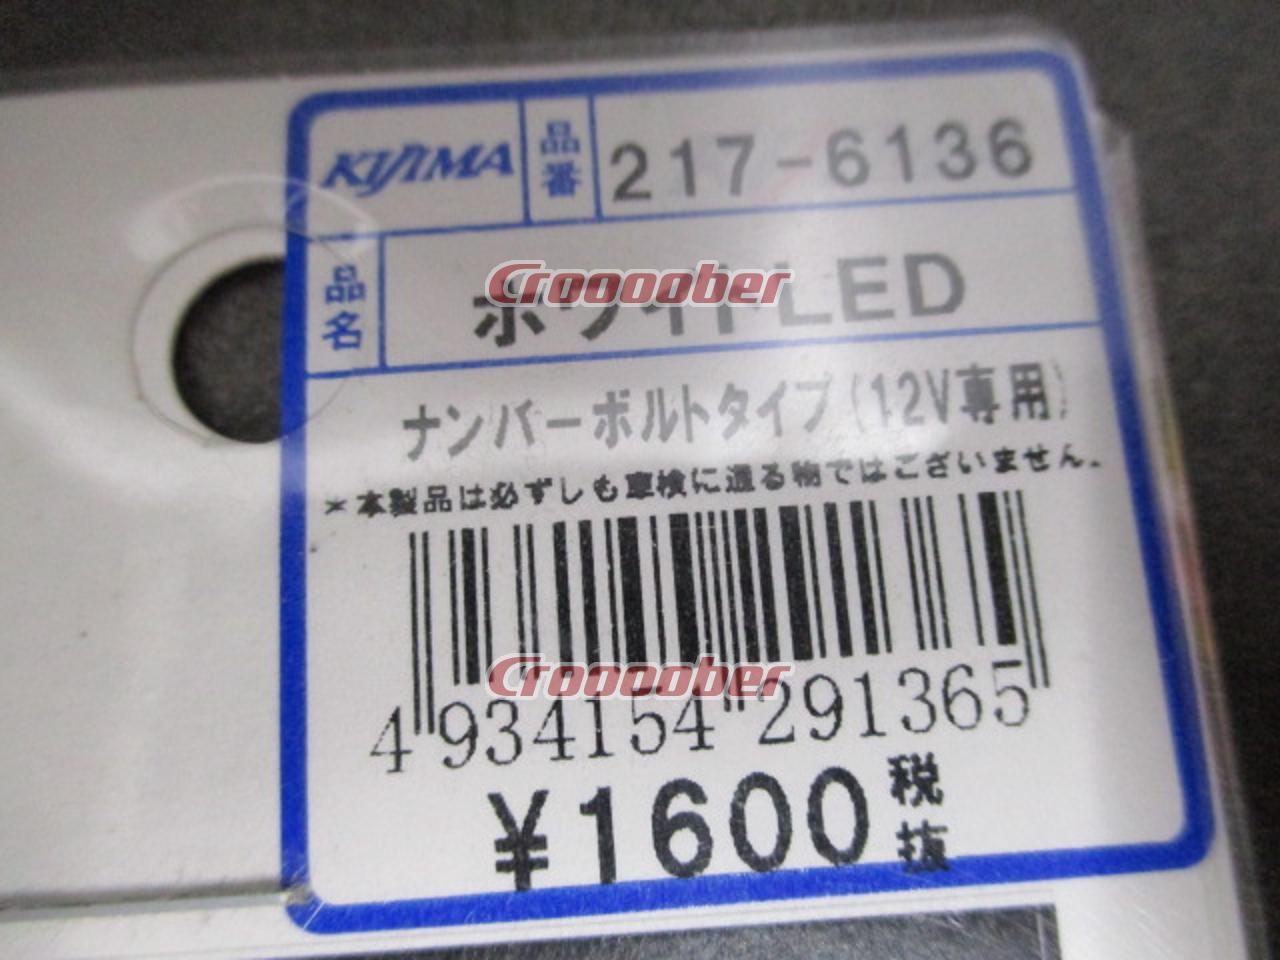 インジケーターランプLED 12V 汎用  注目の福袋 キジマ Kijima   クリア ブルー 217-6138